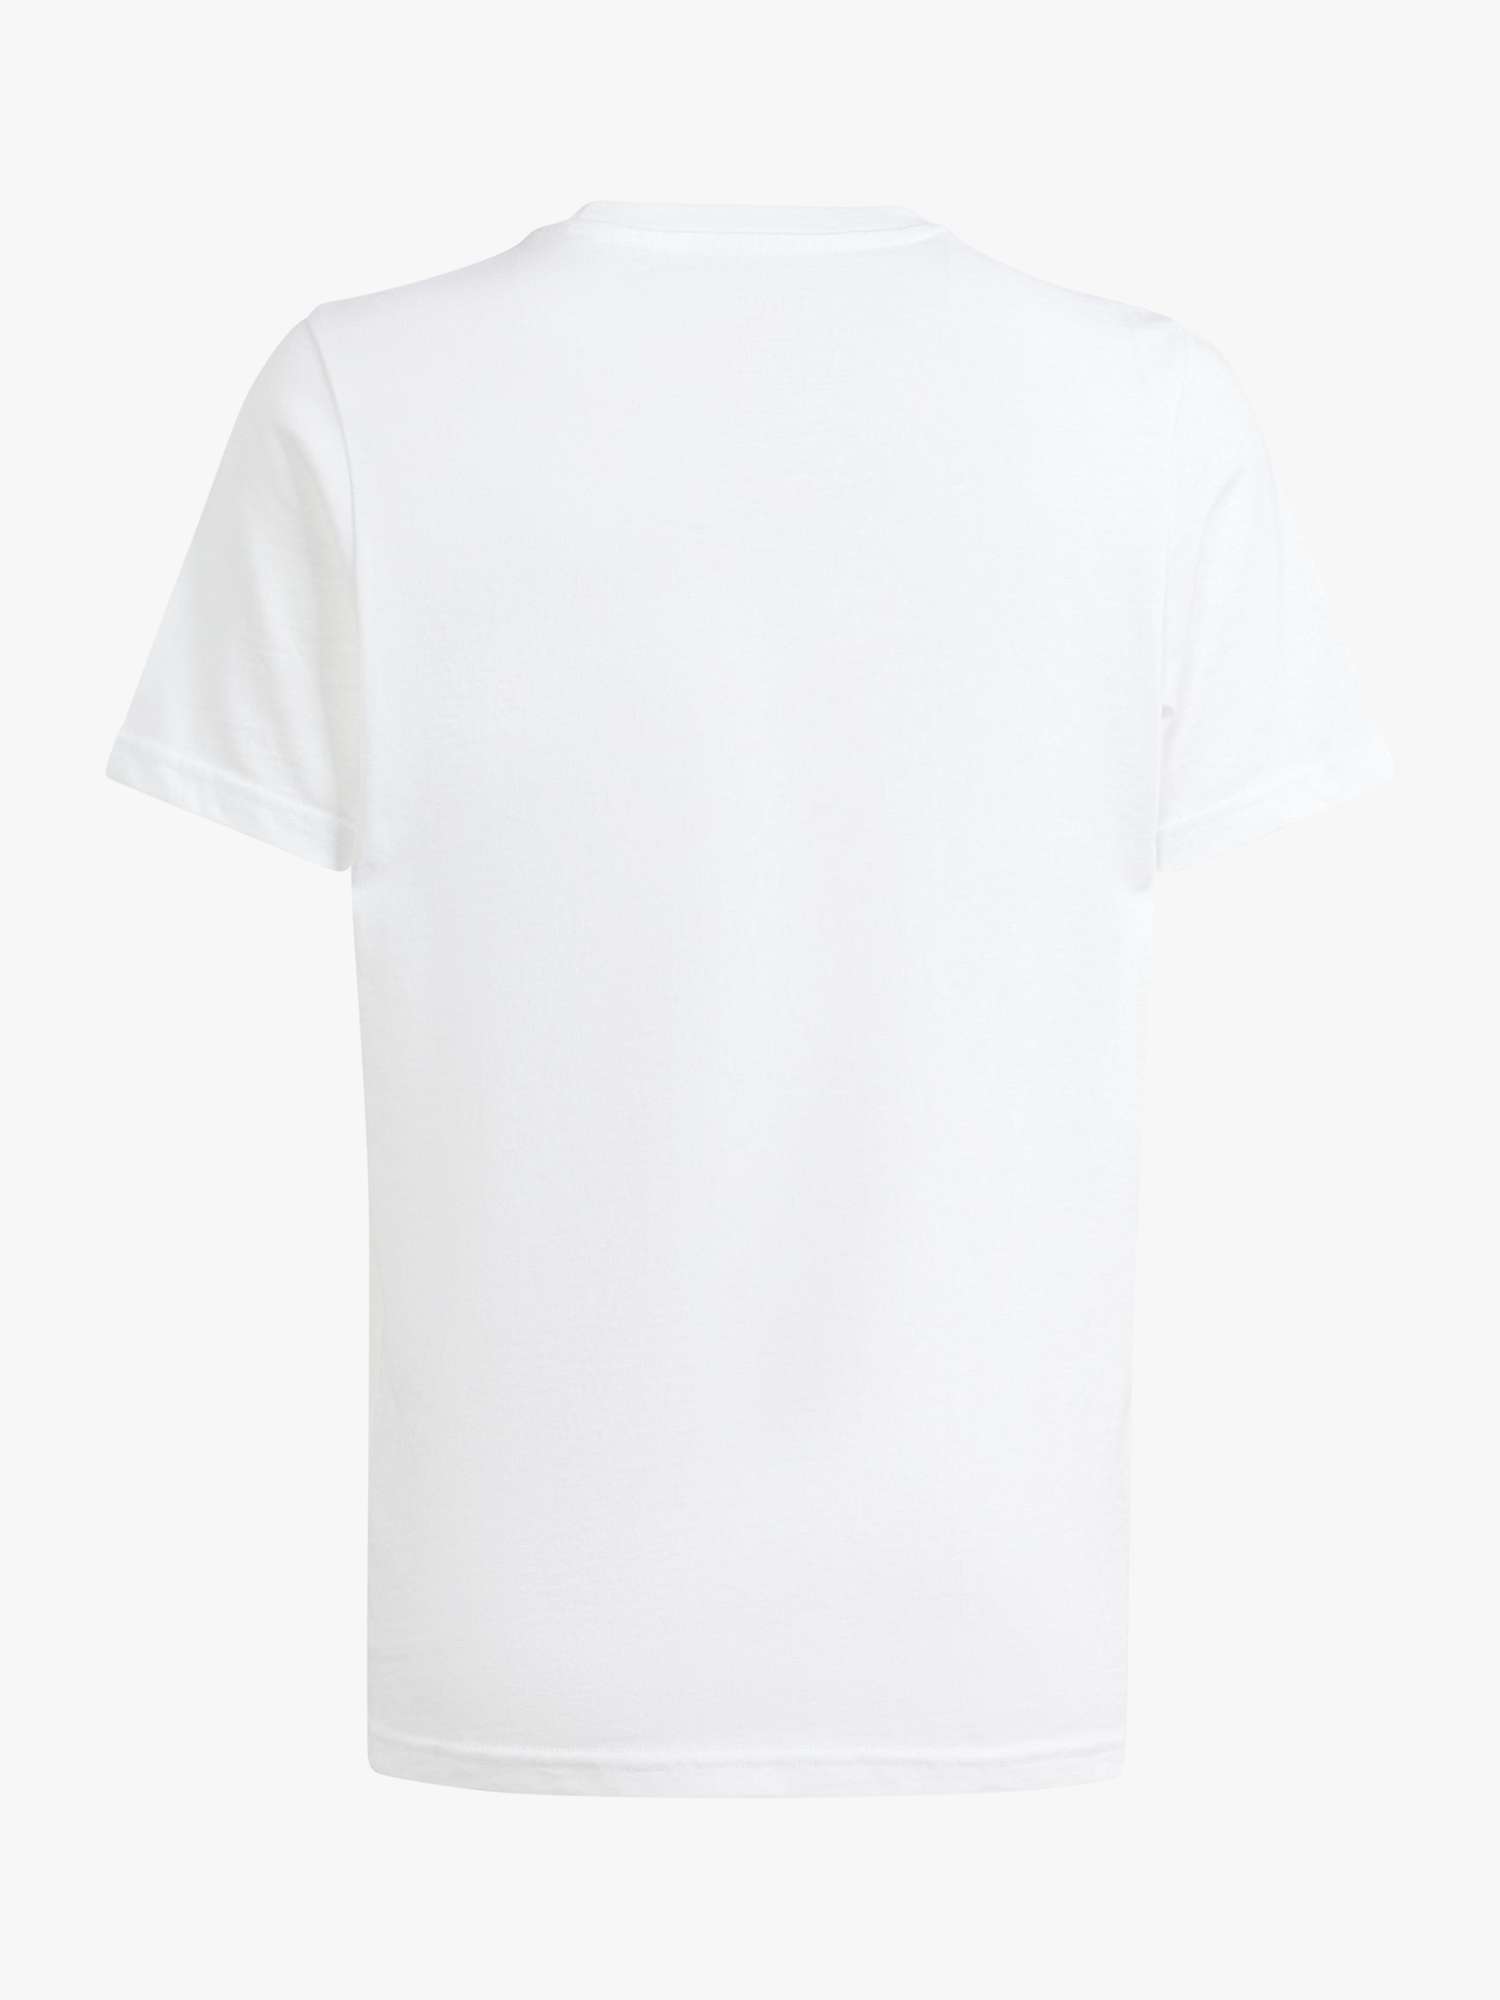 Buy adidas Kids' Animal Print Logo Short Sleeve T-Shirt Online at johnlewis.com